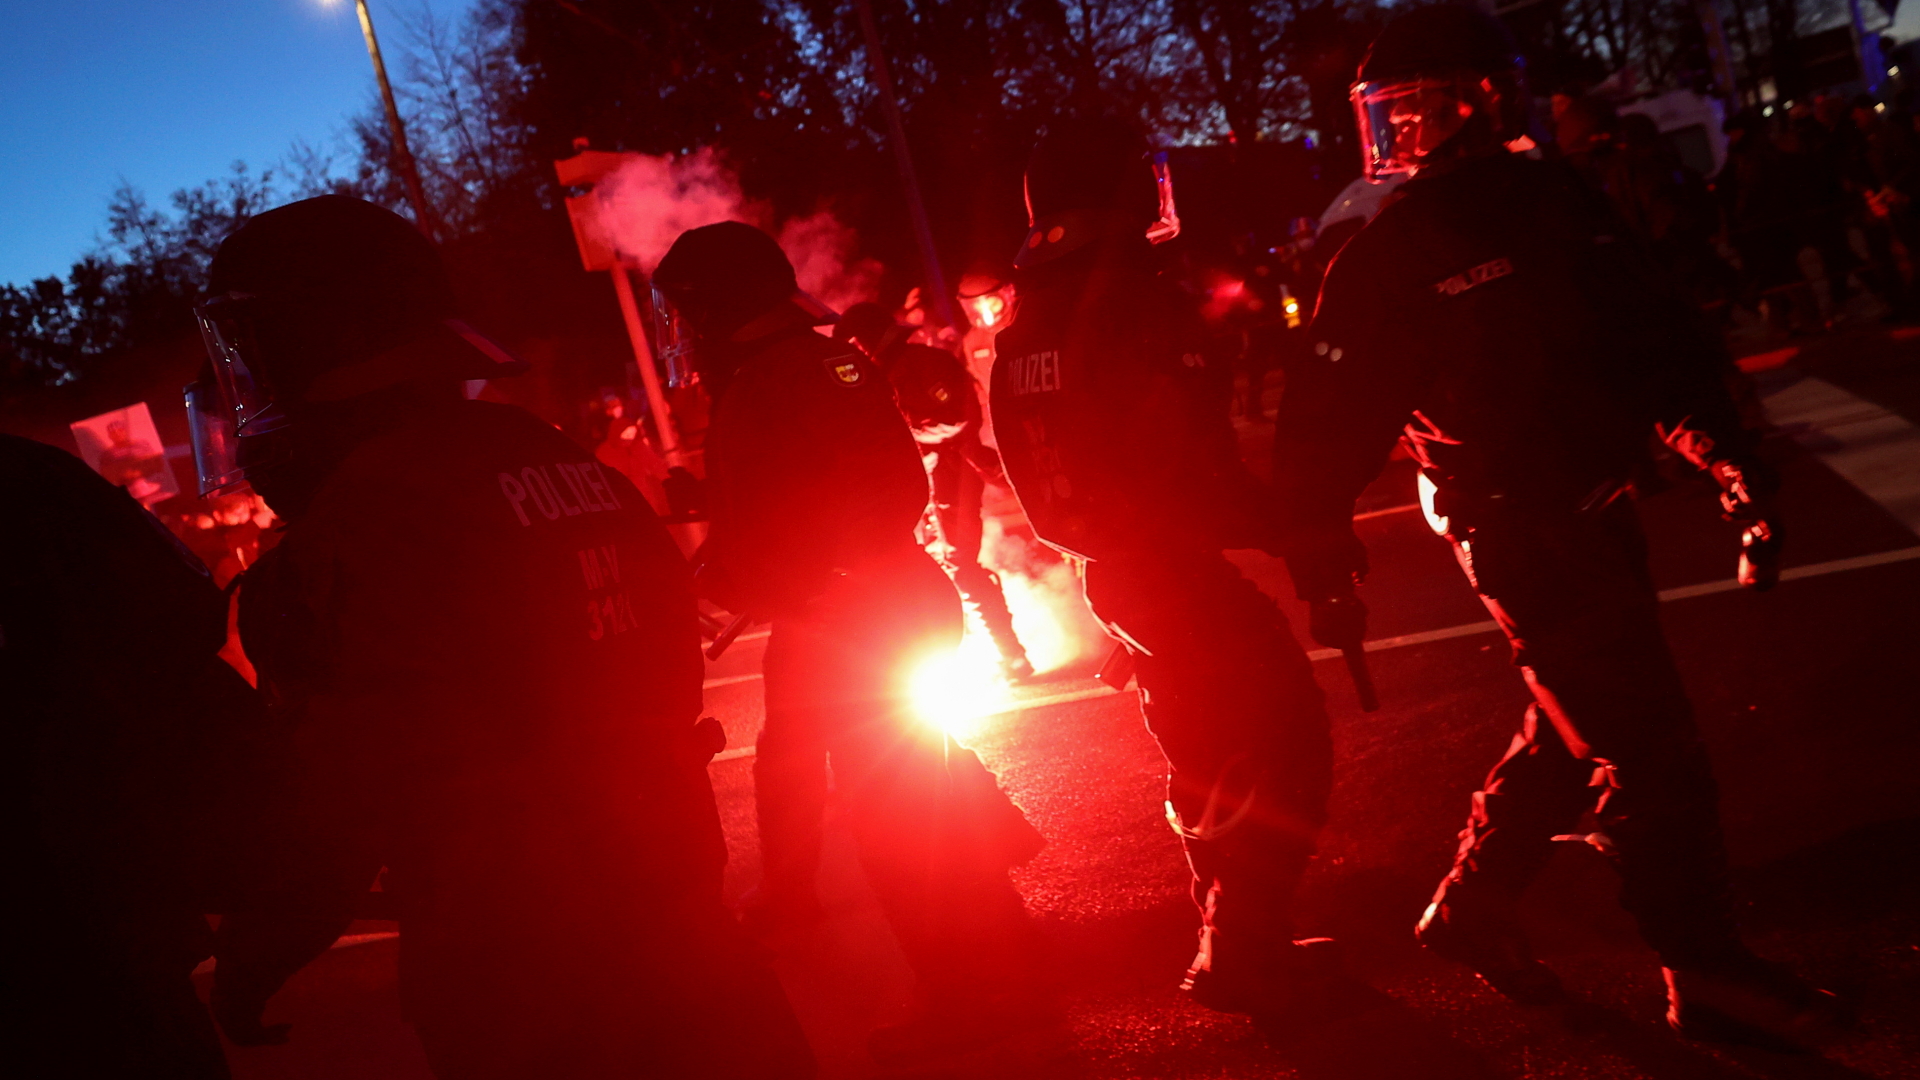 Bei der "Querdenken"-Demonstration in Leipzig ist Pyrotechnik gezündet worden. | REUTERS